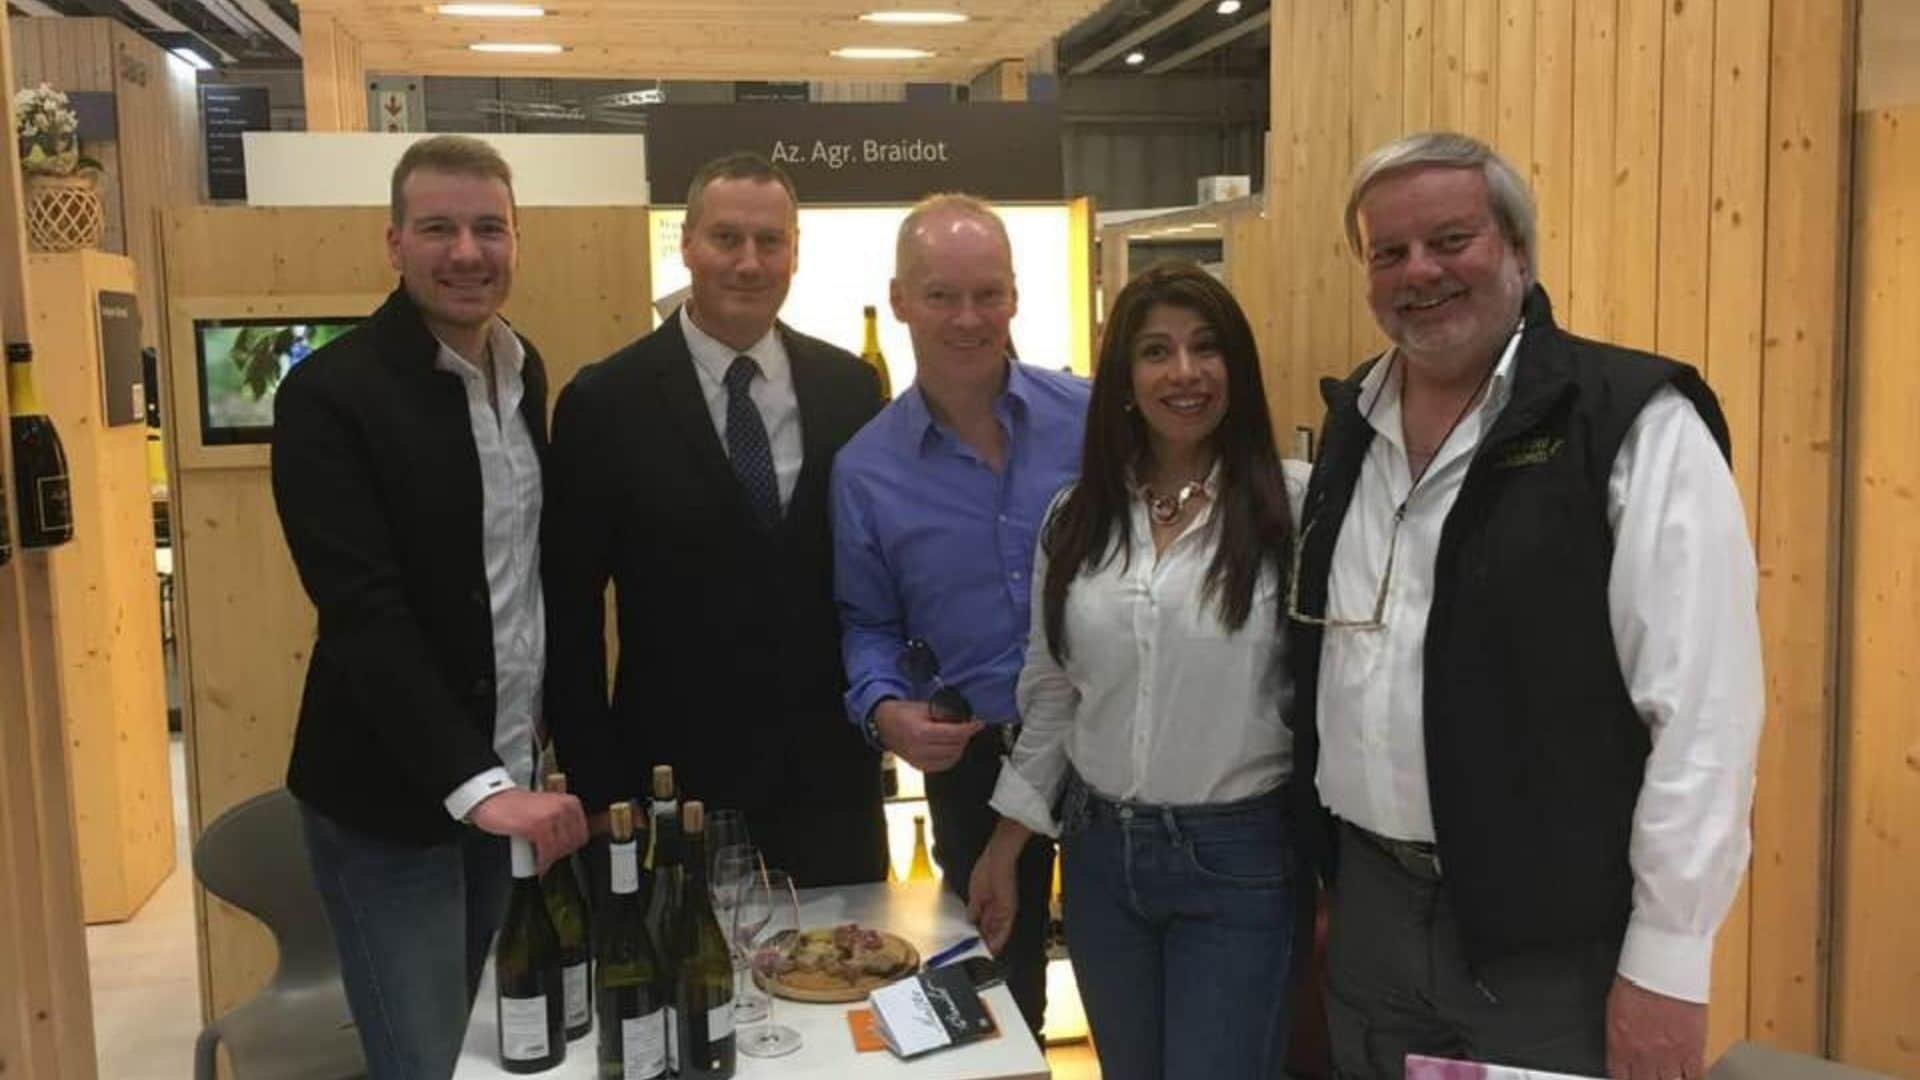 La fiera internazionale del vino Vinitaly 2019 con Matteo Braidot produttore del Friuli.